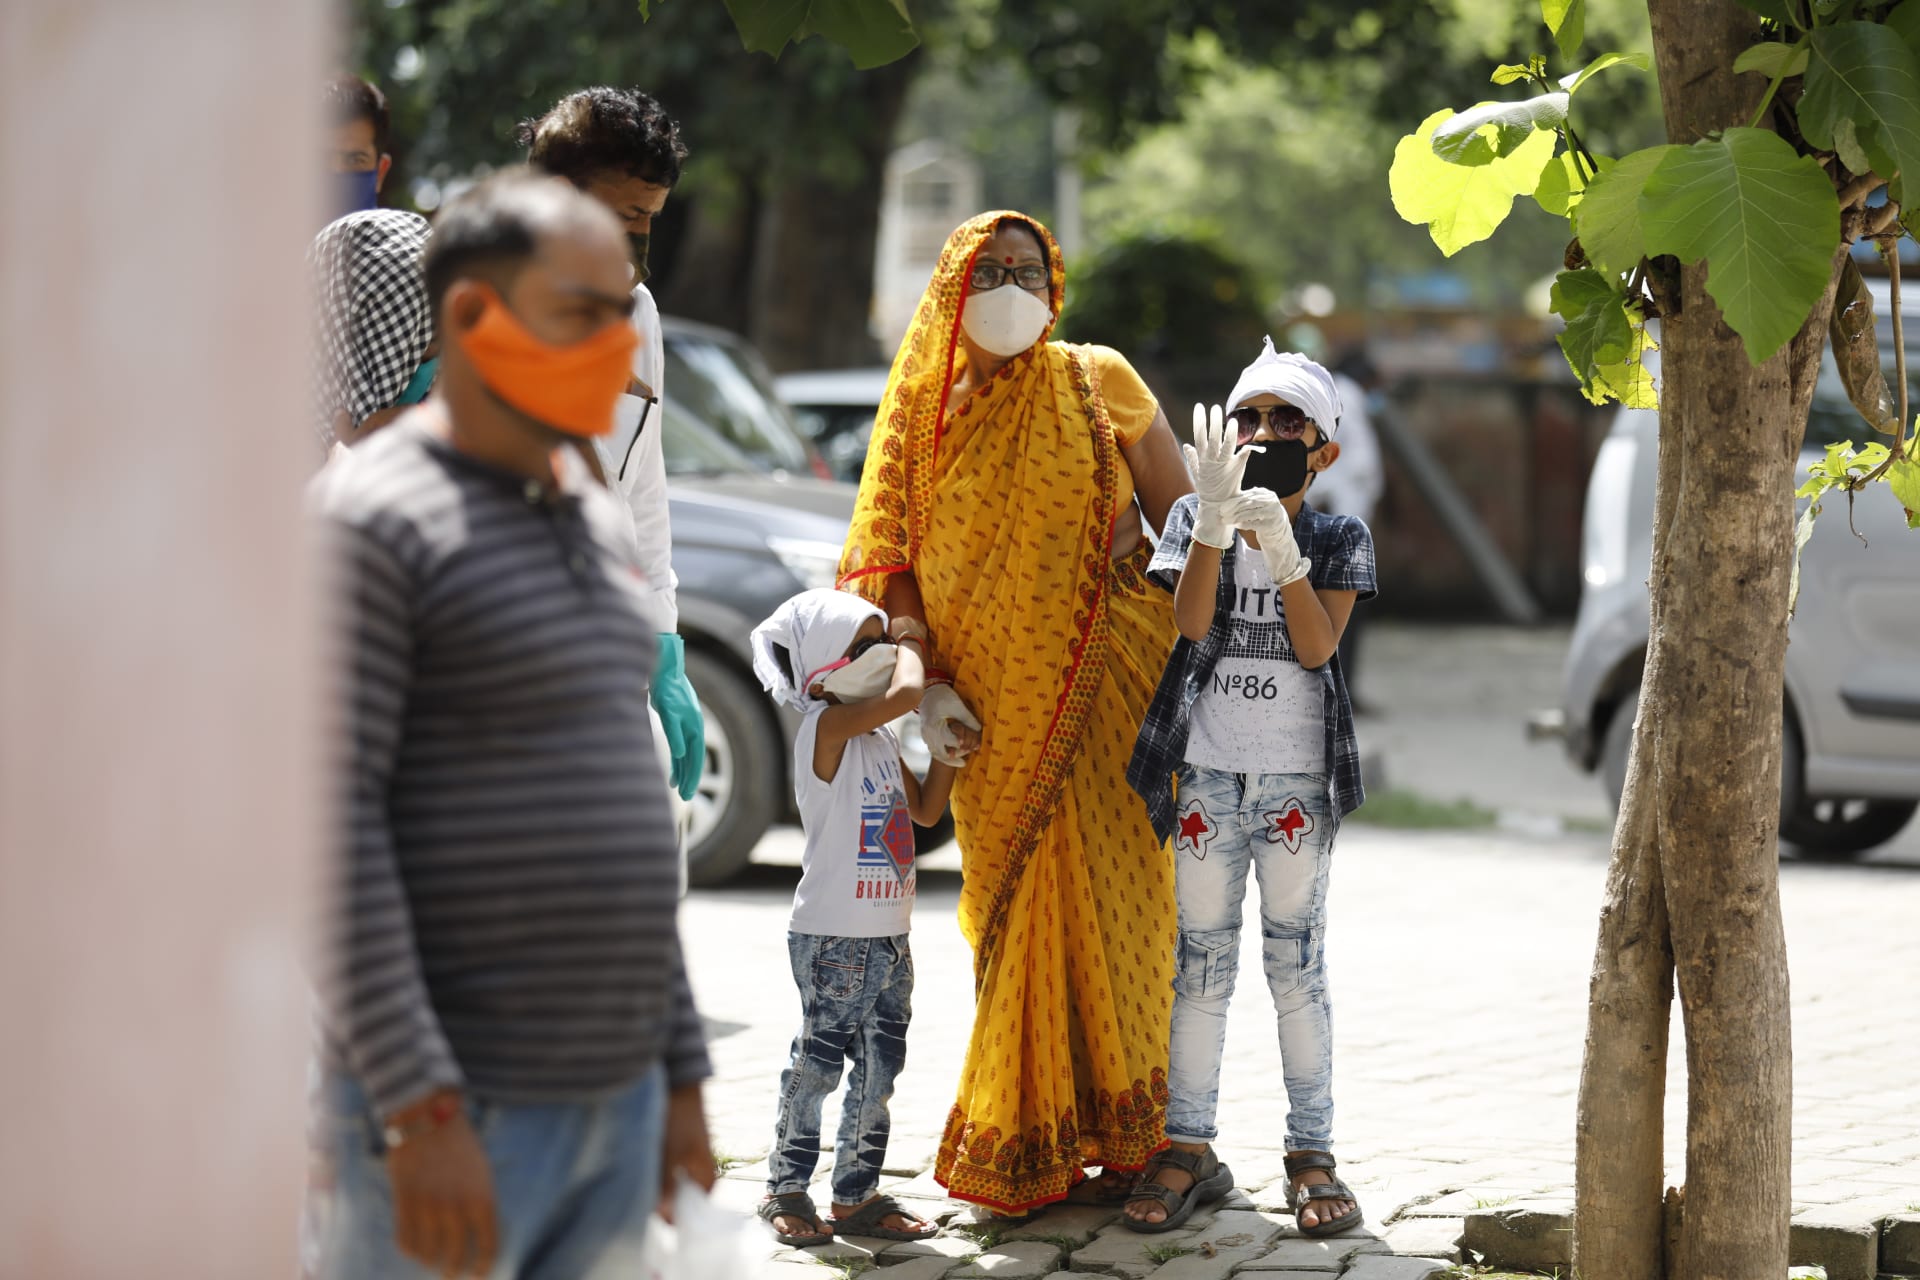 V Indii přibylo za jediný den 90 tisíc nakažených, jedná se o globální rekord